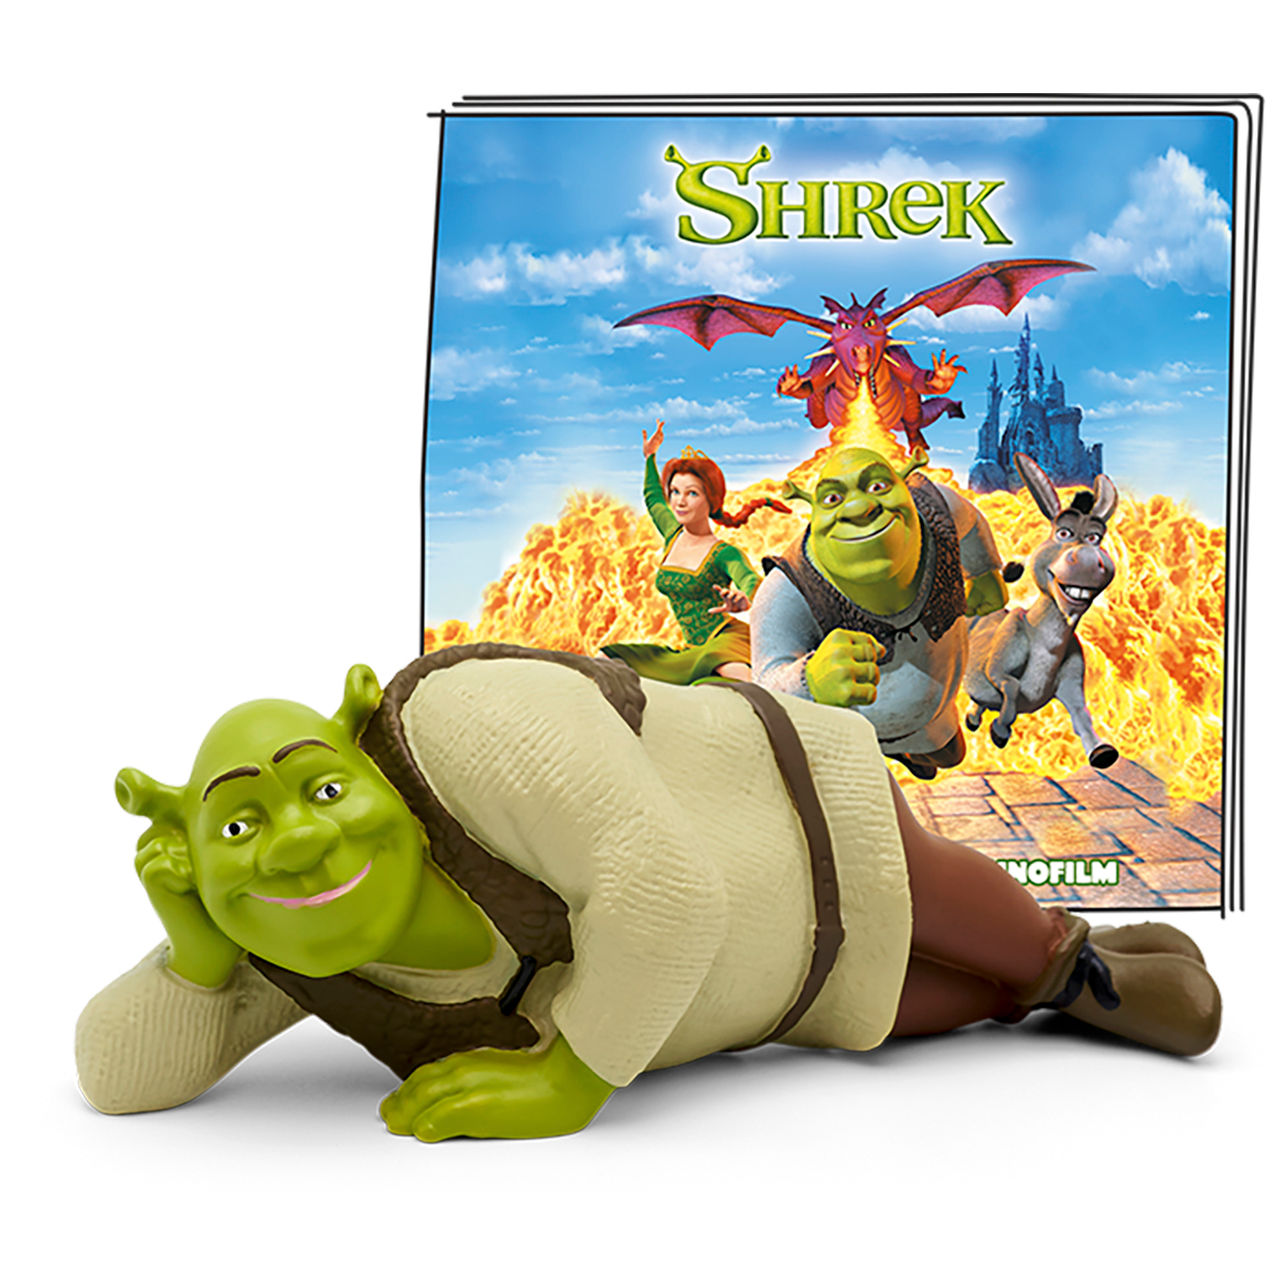 tonie Shrek - Der Tollkühne Held kaufen | tausendkind.de